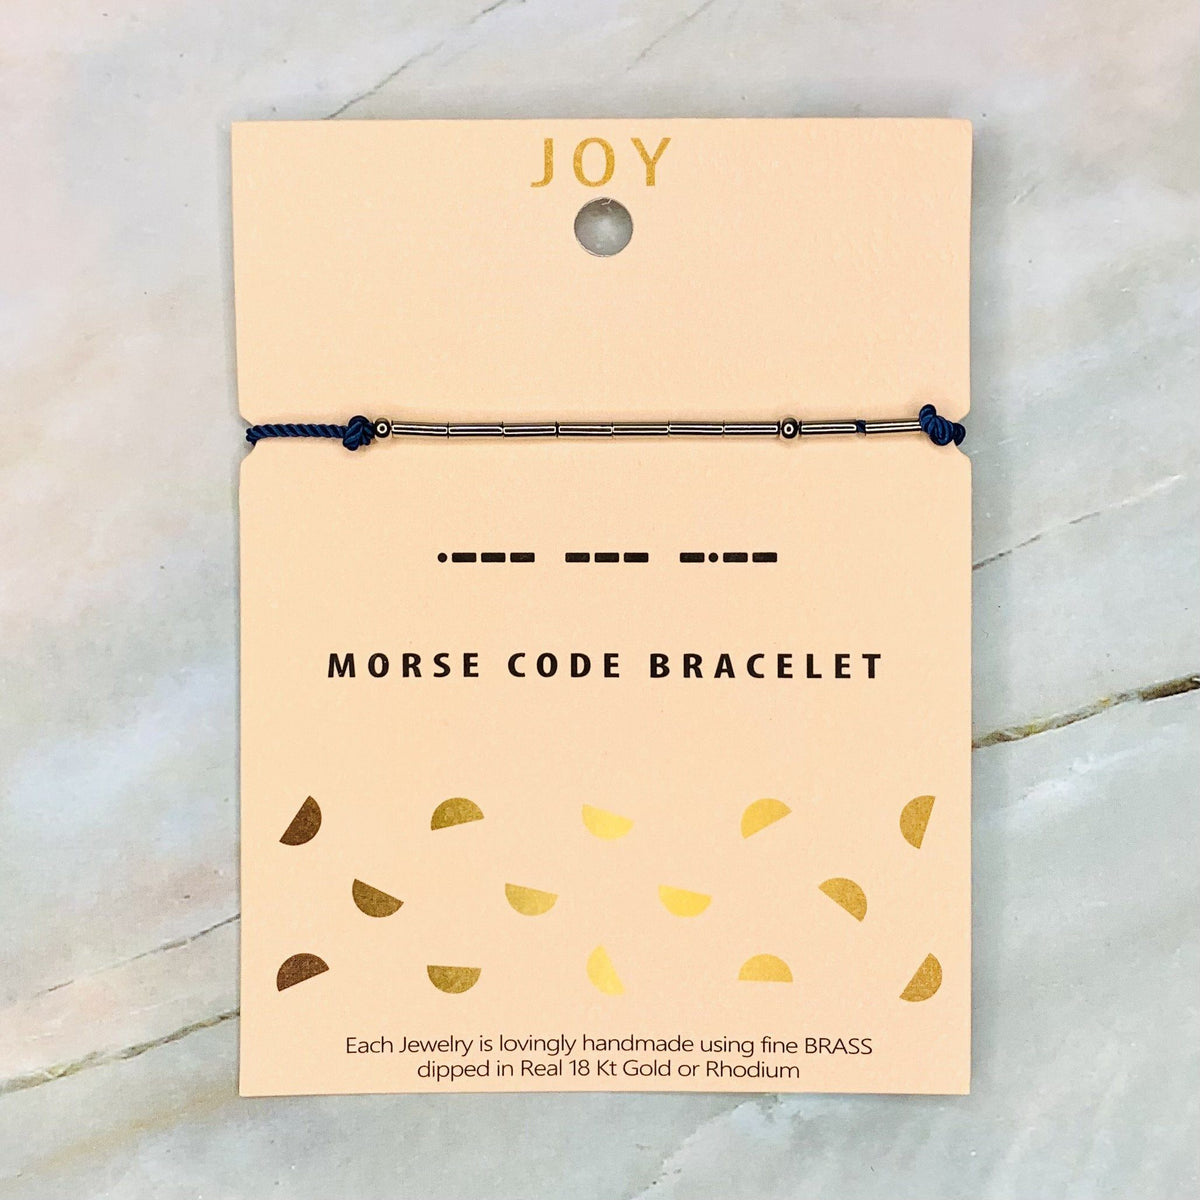 Morse Code Bracelet Jewelry Lauren-Spencer Joy 